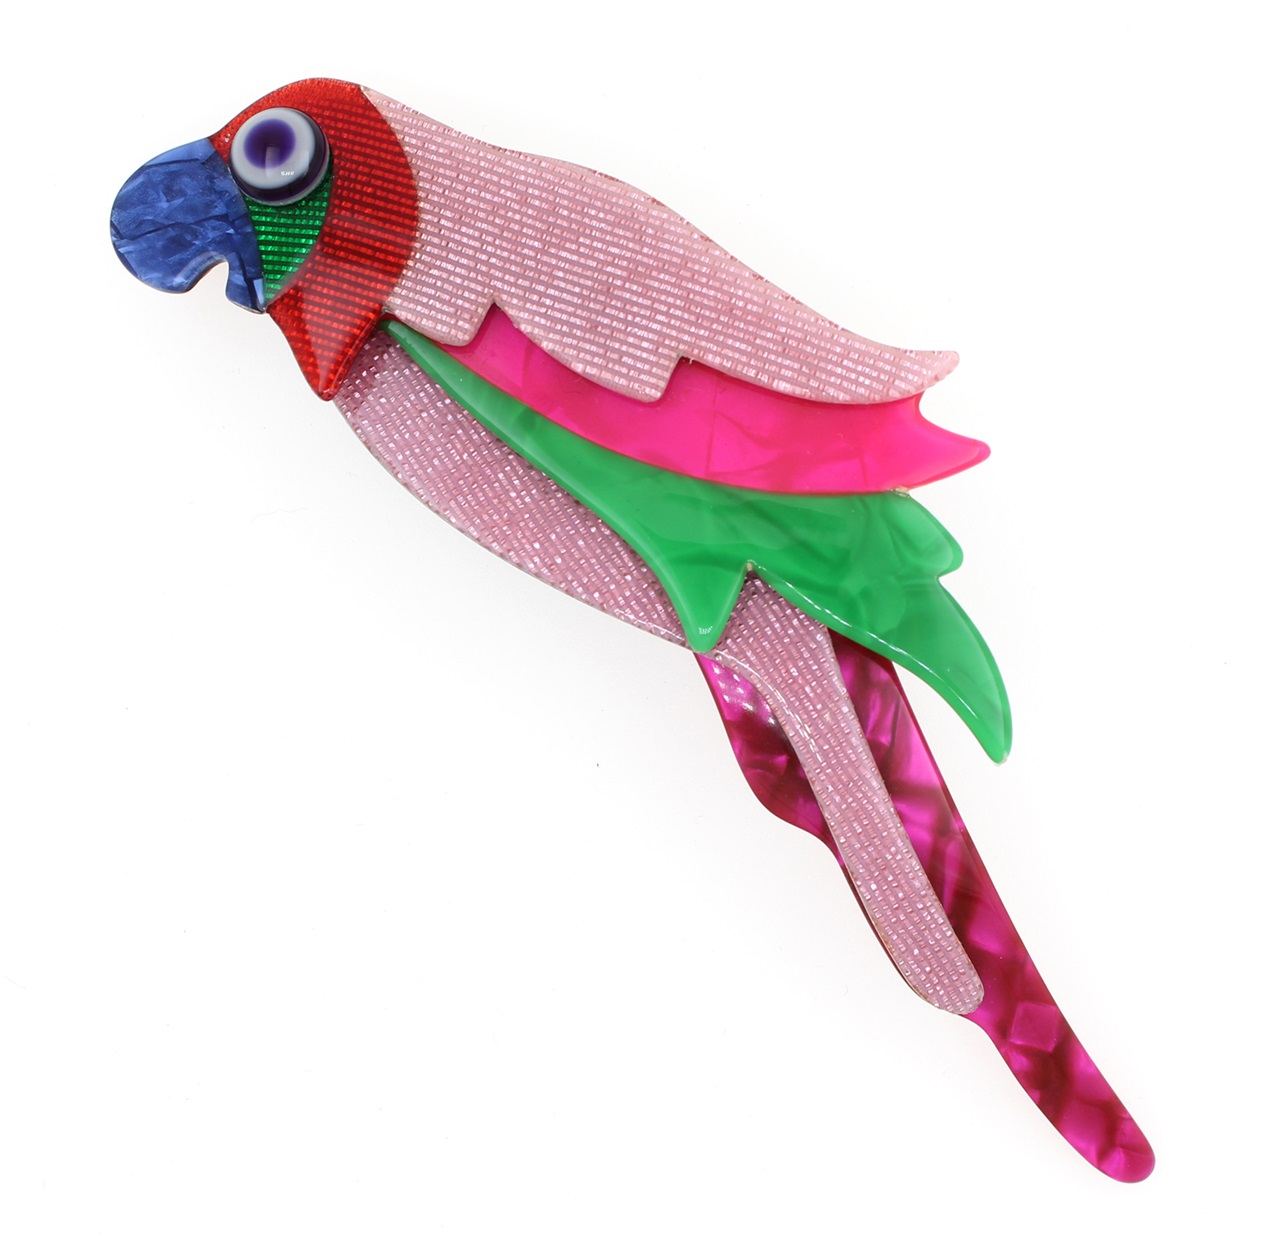 Léa Stein Perching Parrot Brooch - Pink, Green & Blue - NEW